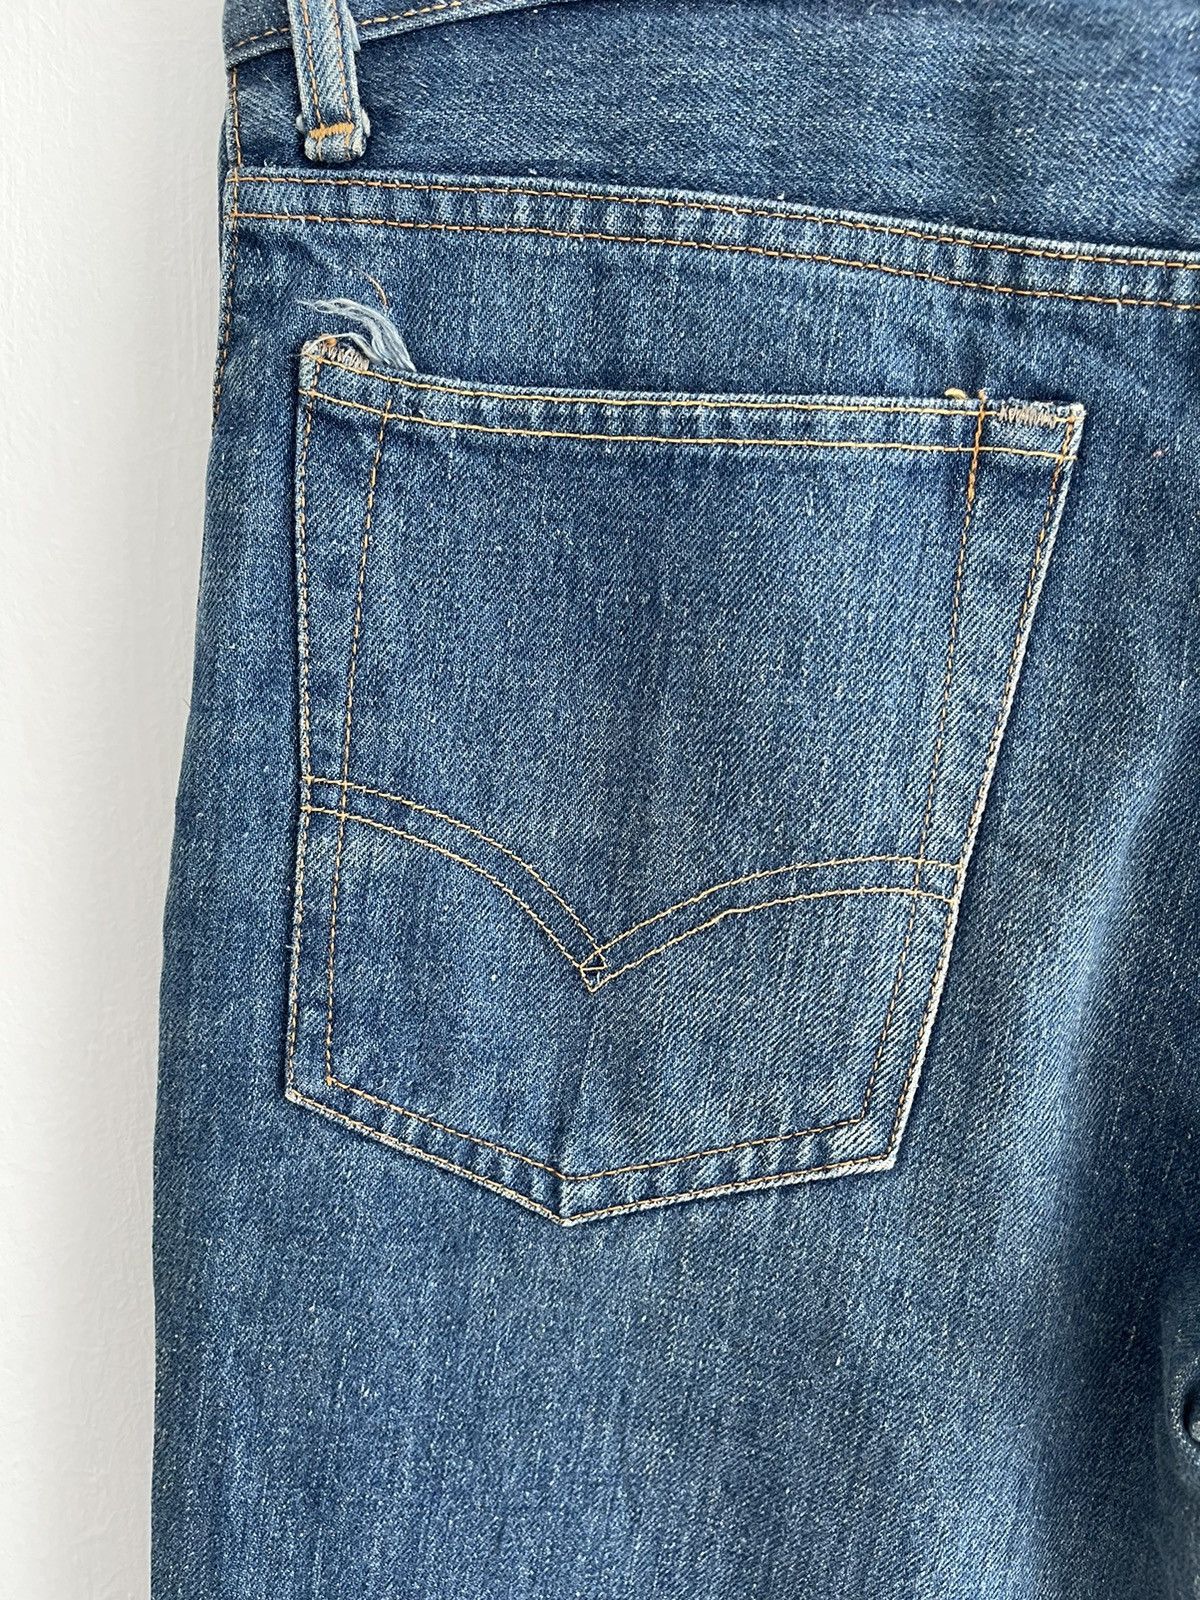 Vintage 70s Levis 507-0217 flare jeans - 9